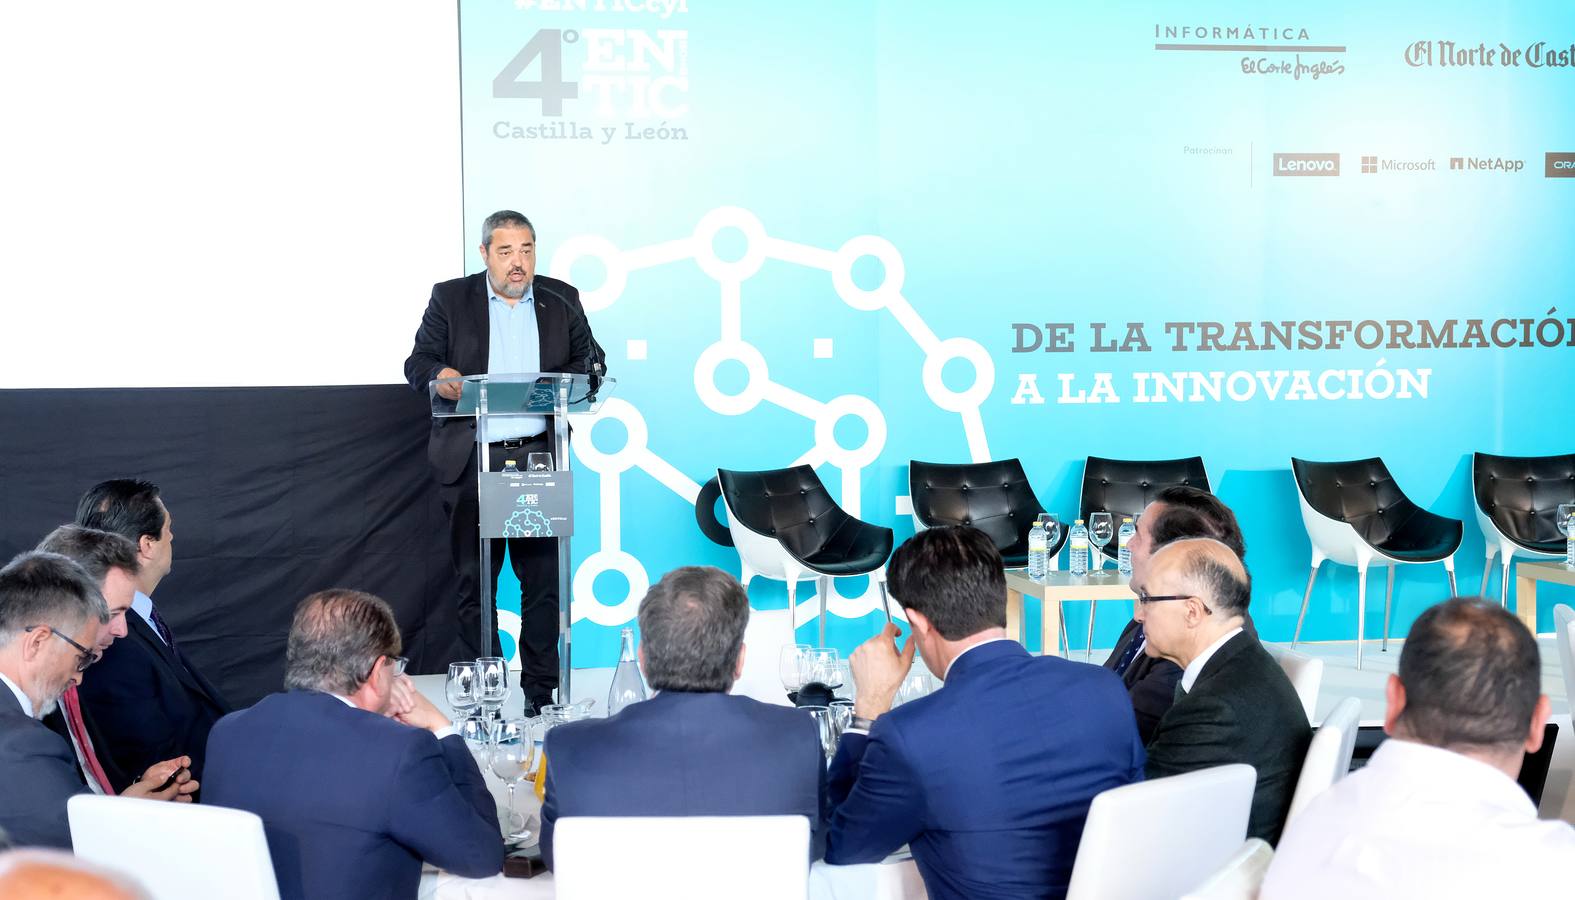 Un evento organizado por Informática El Corte Inglés (IECISA) y El Norte de Castilla, bajo el título genérico 'De la Transformación a la Innovación'